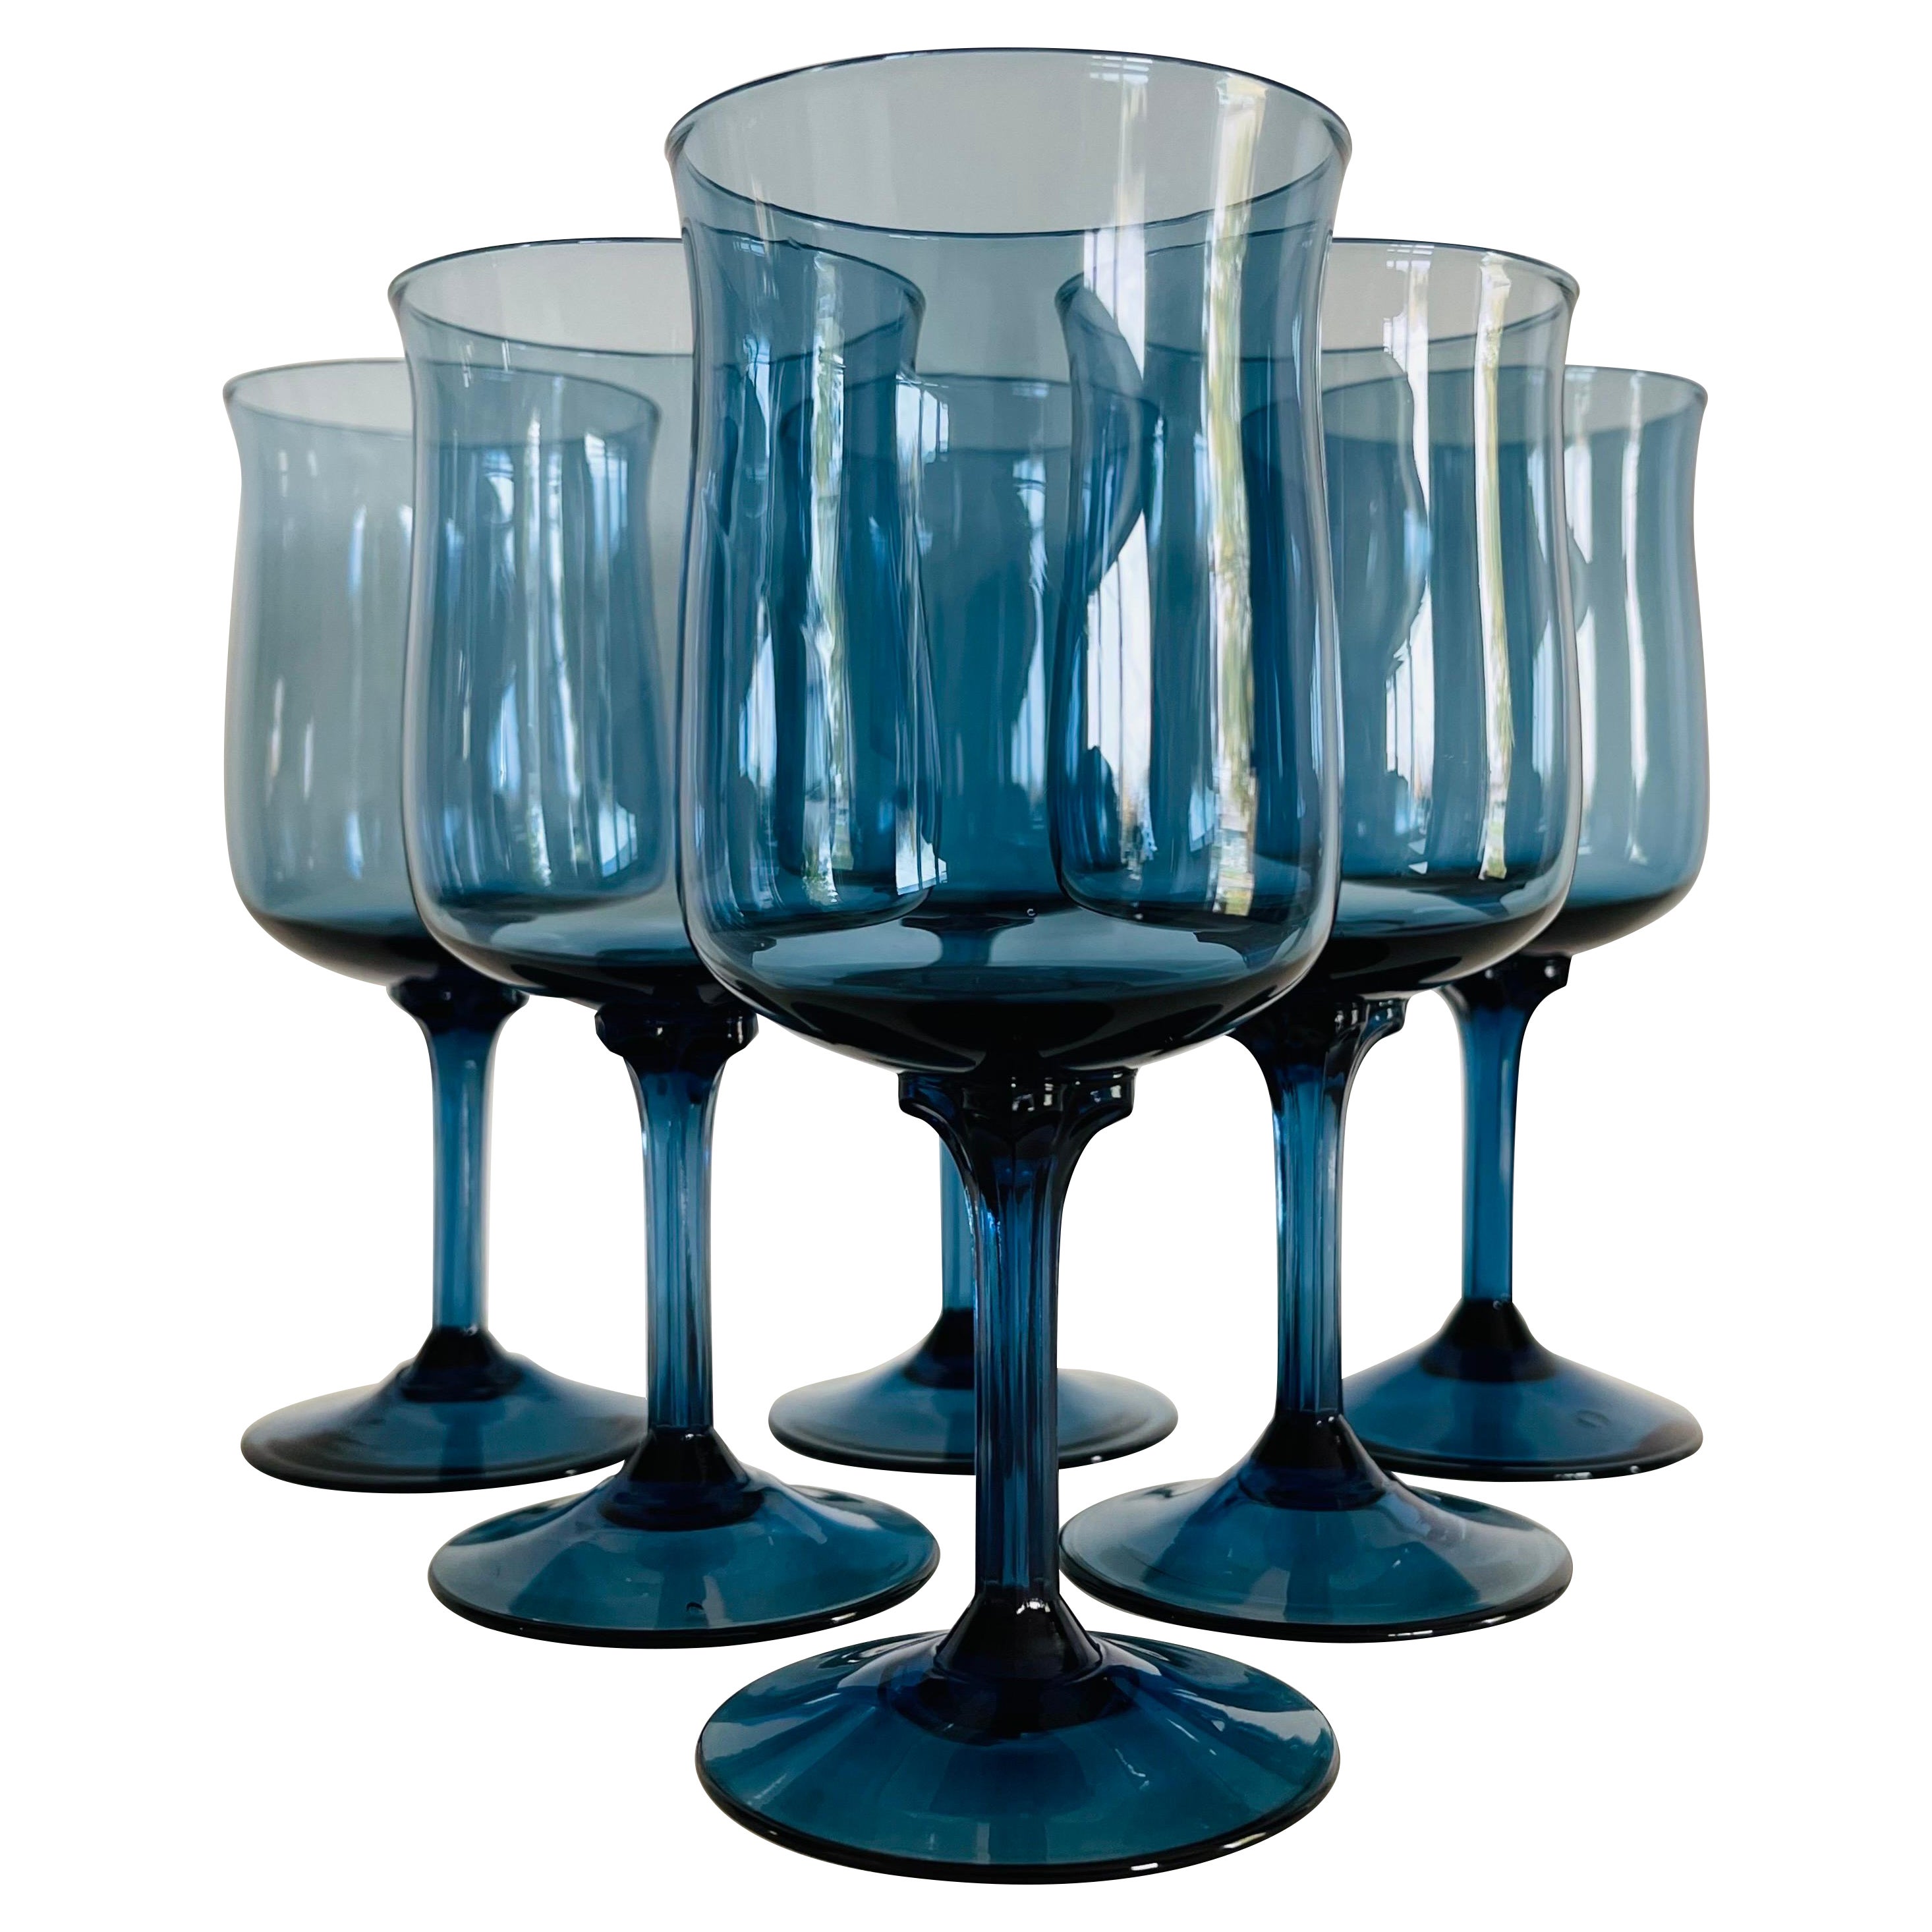 6 Vintage Hollow Stem Port Wine Glasses, 1960's, After Dinner Drinks - 4 oz  - Port Wine glasses, 4 oz Dessert Wine Glasses - Cordials